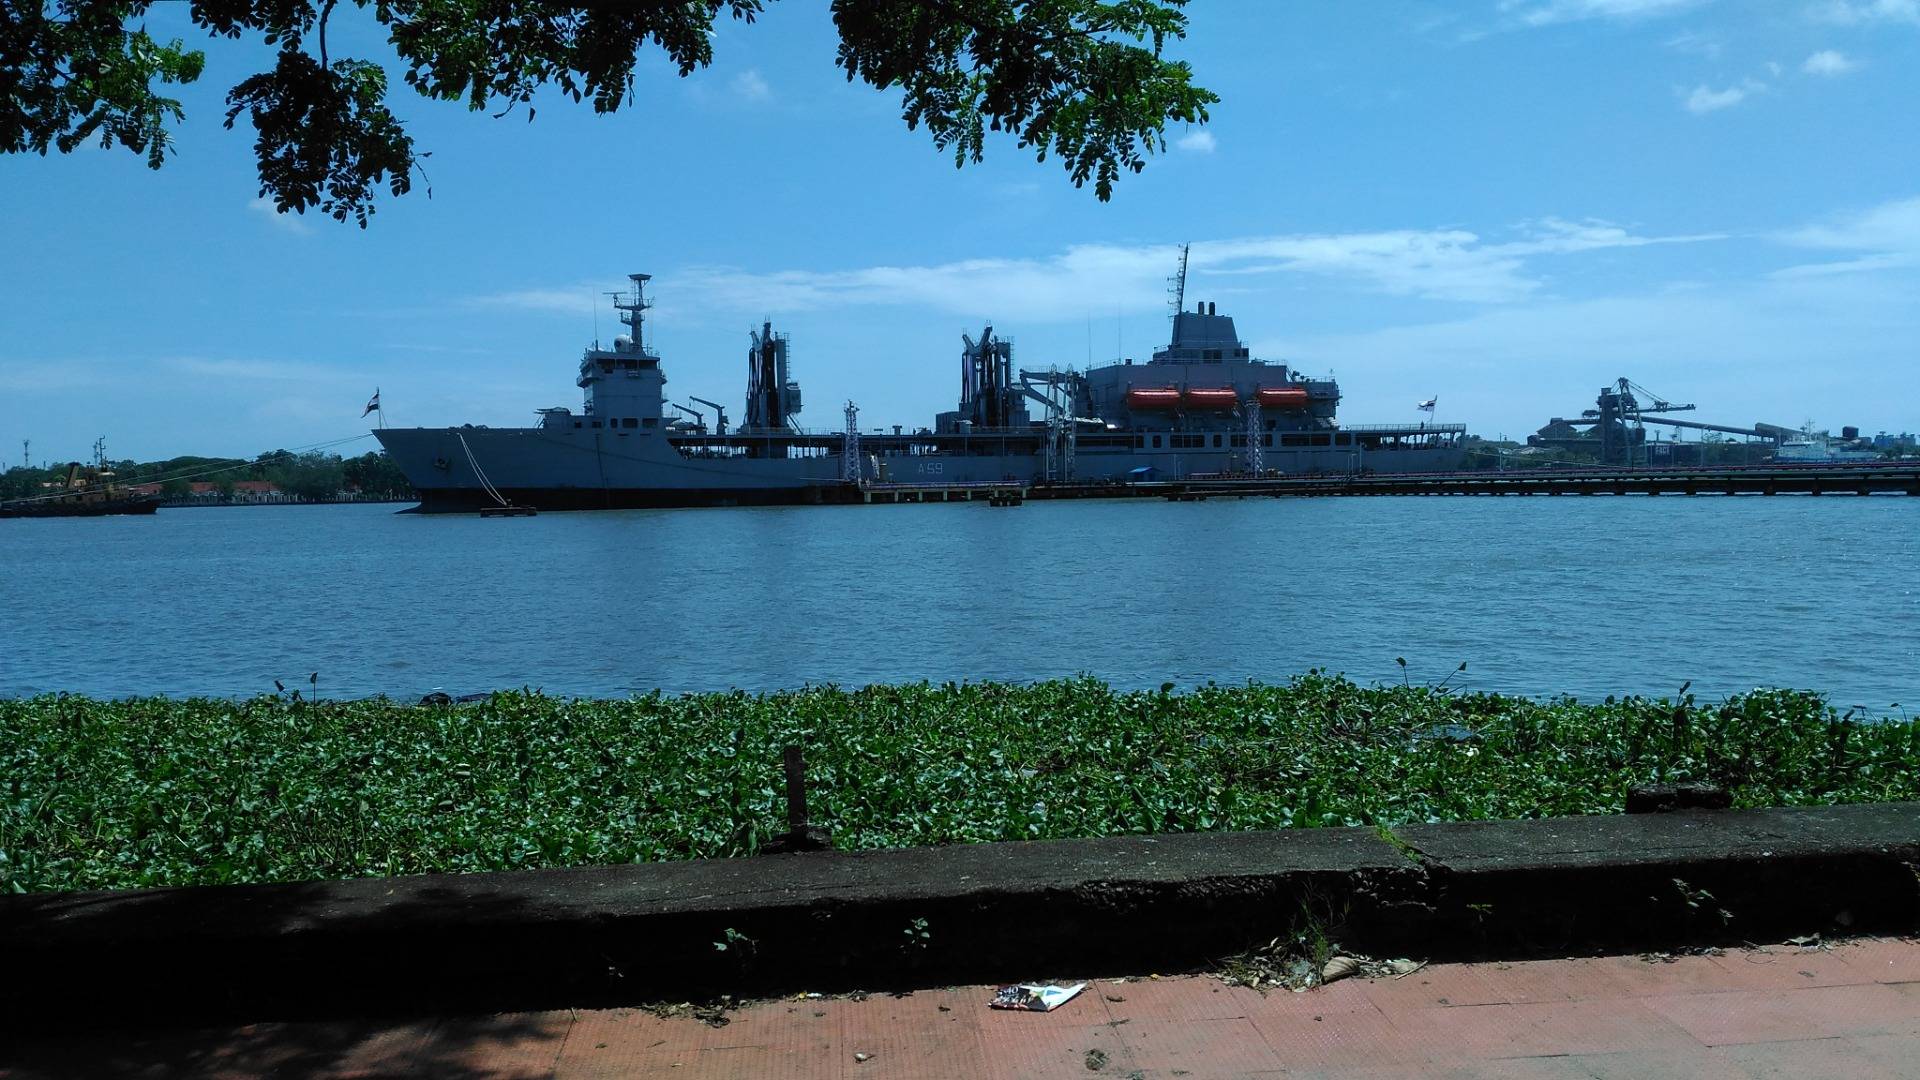 Kochi is a seaport